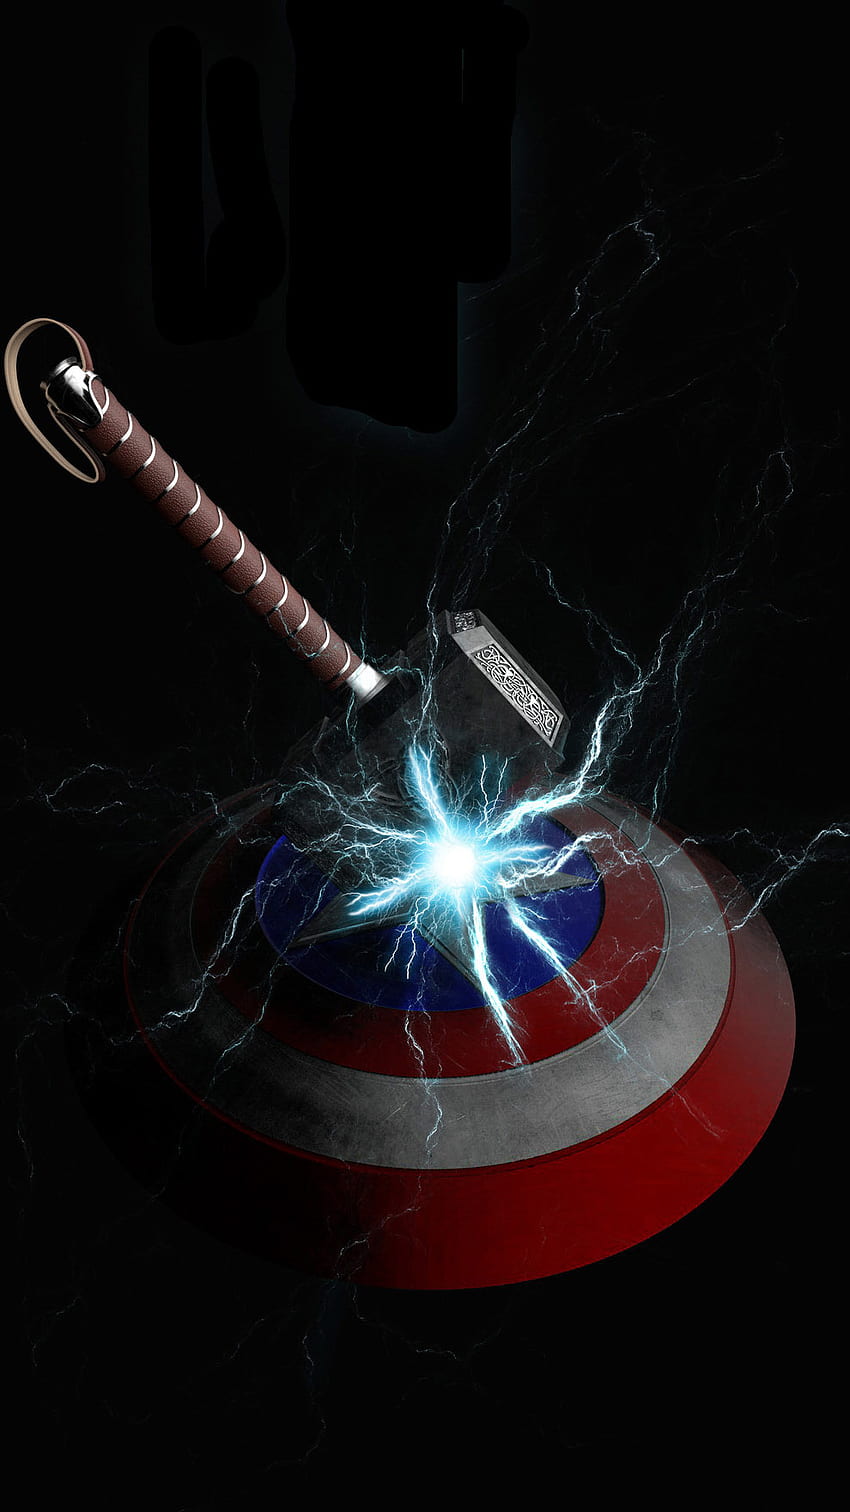 Mjolnir Vs Captain America Shield IPhone - IPhone : iPhone, Captain America AMOLED HD phone wallpaper